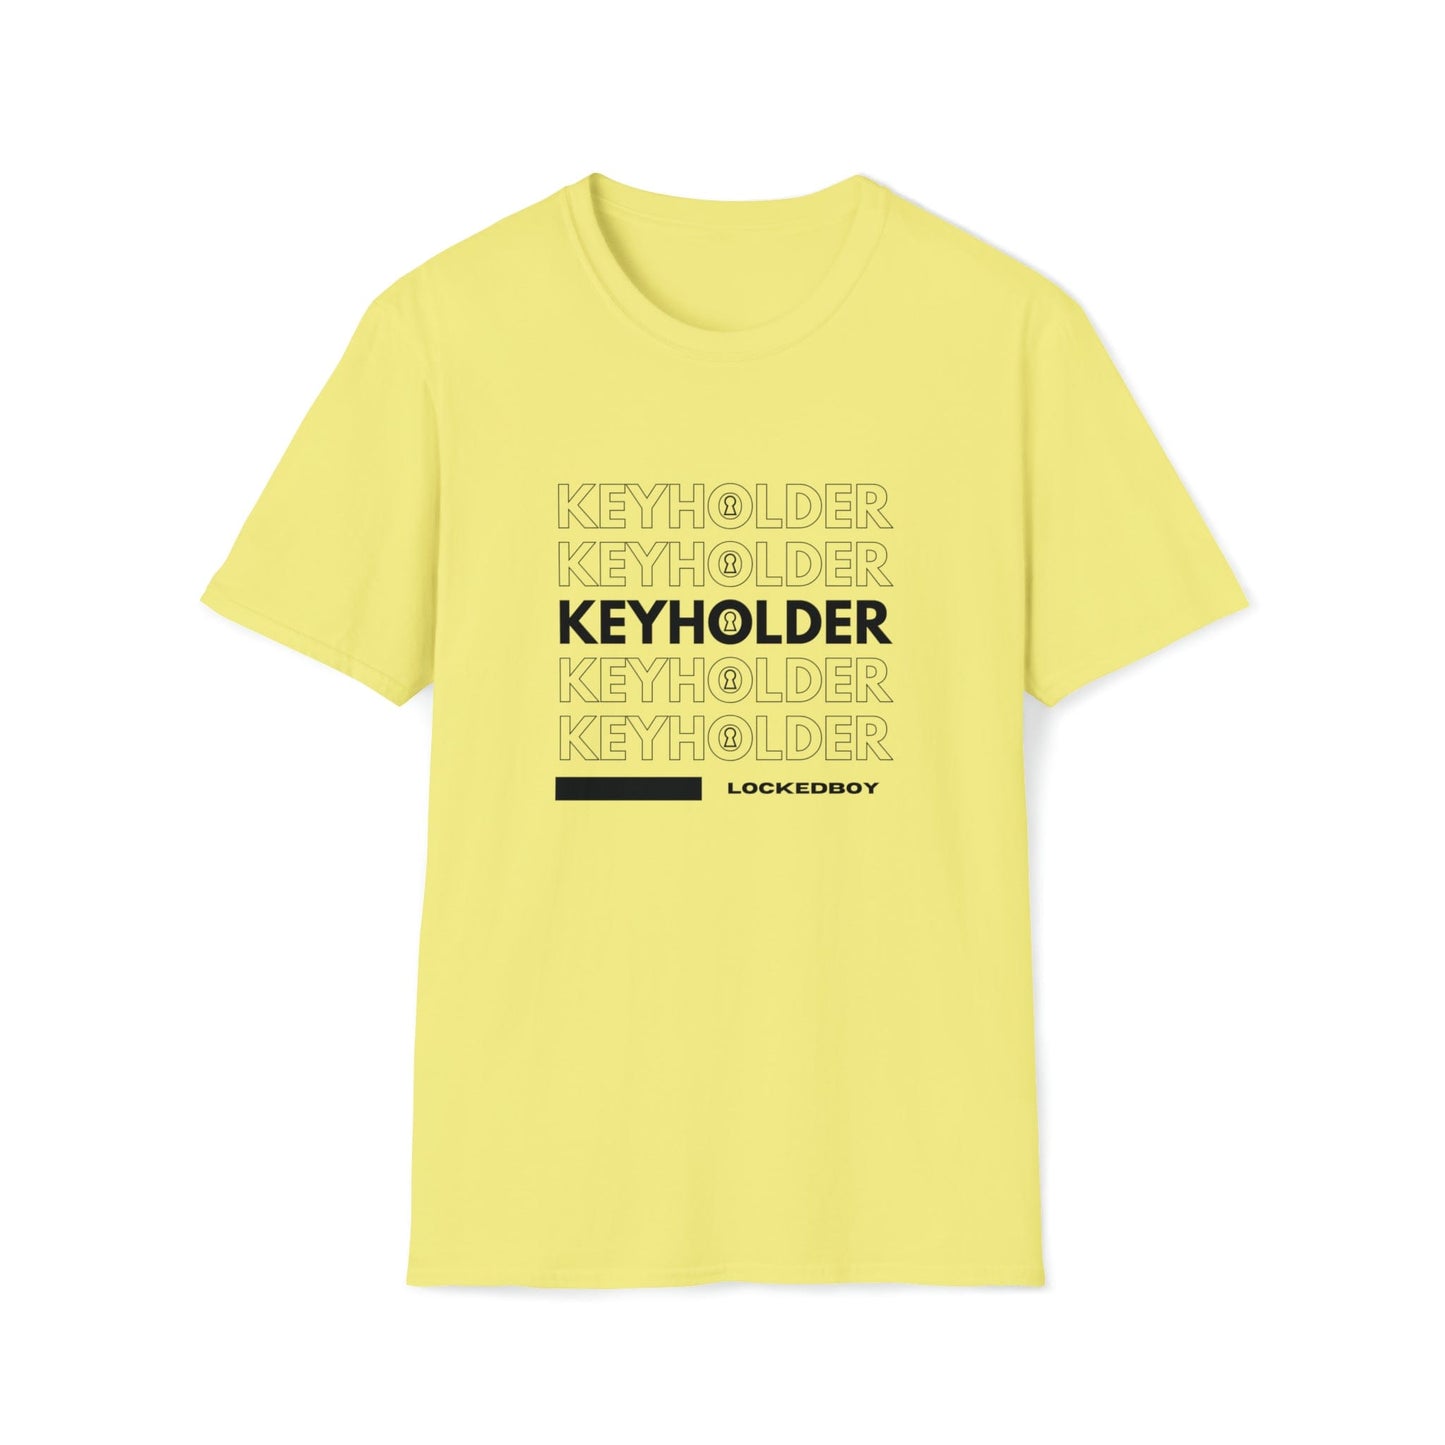 T-Shirt Cornsilk / S KEYHOLDER bag Inspo - Chastity Shirts by LockedBoy Athletics LEATHERDADDY BATOR